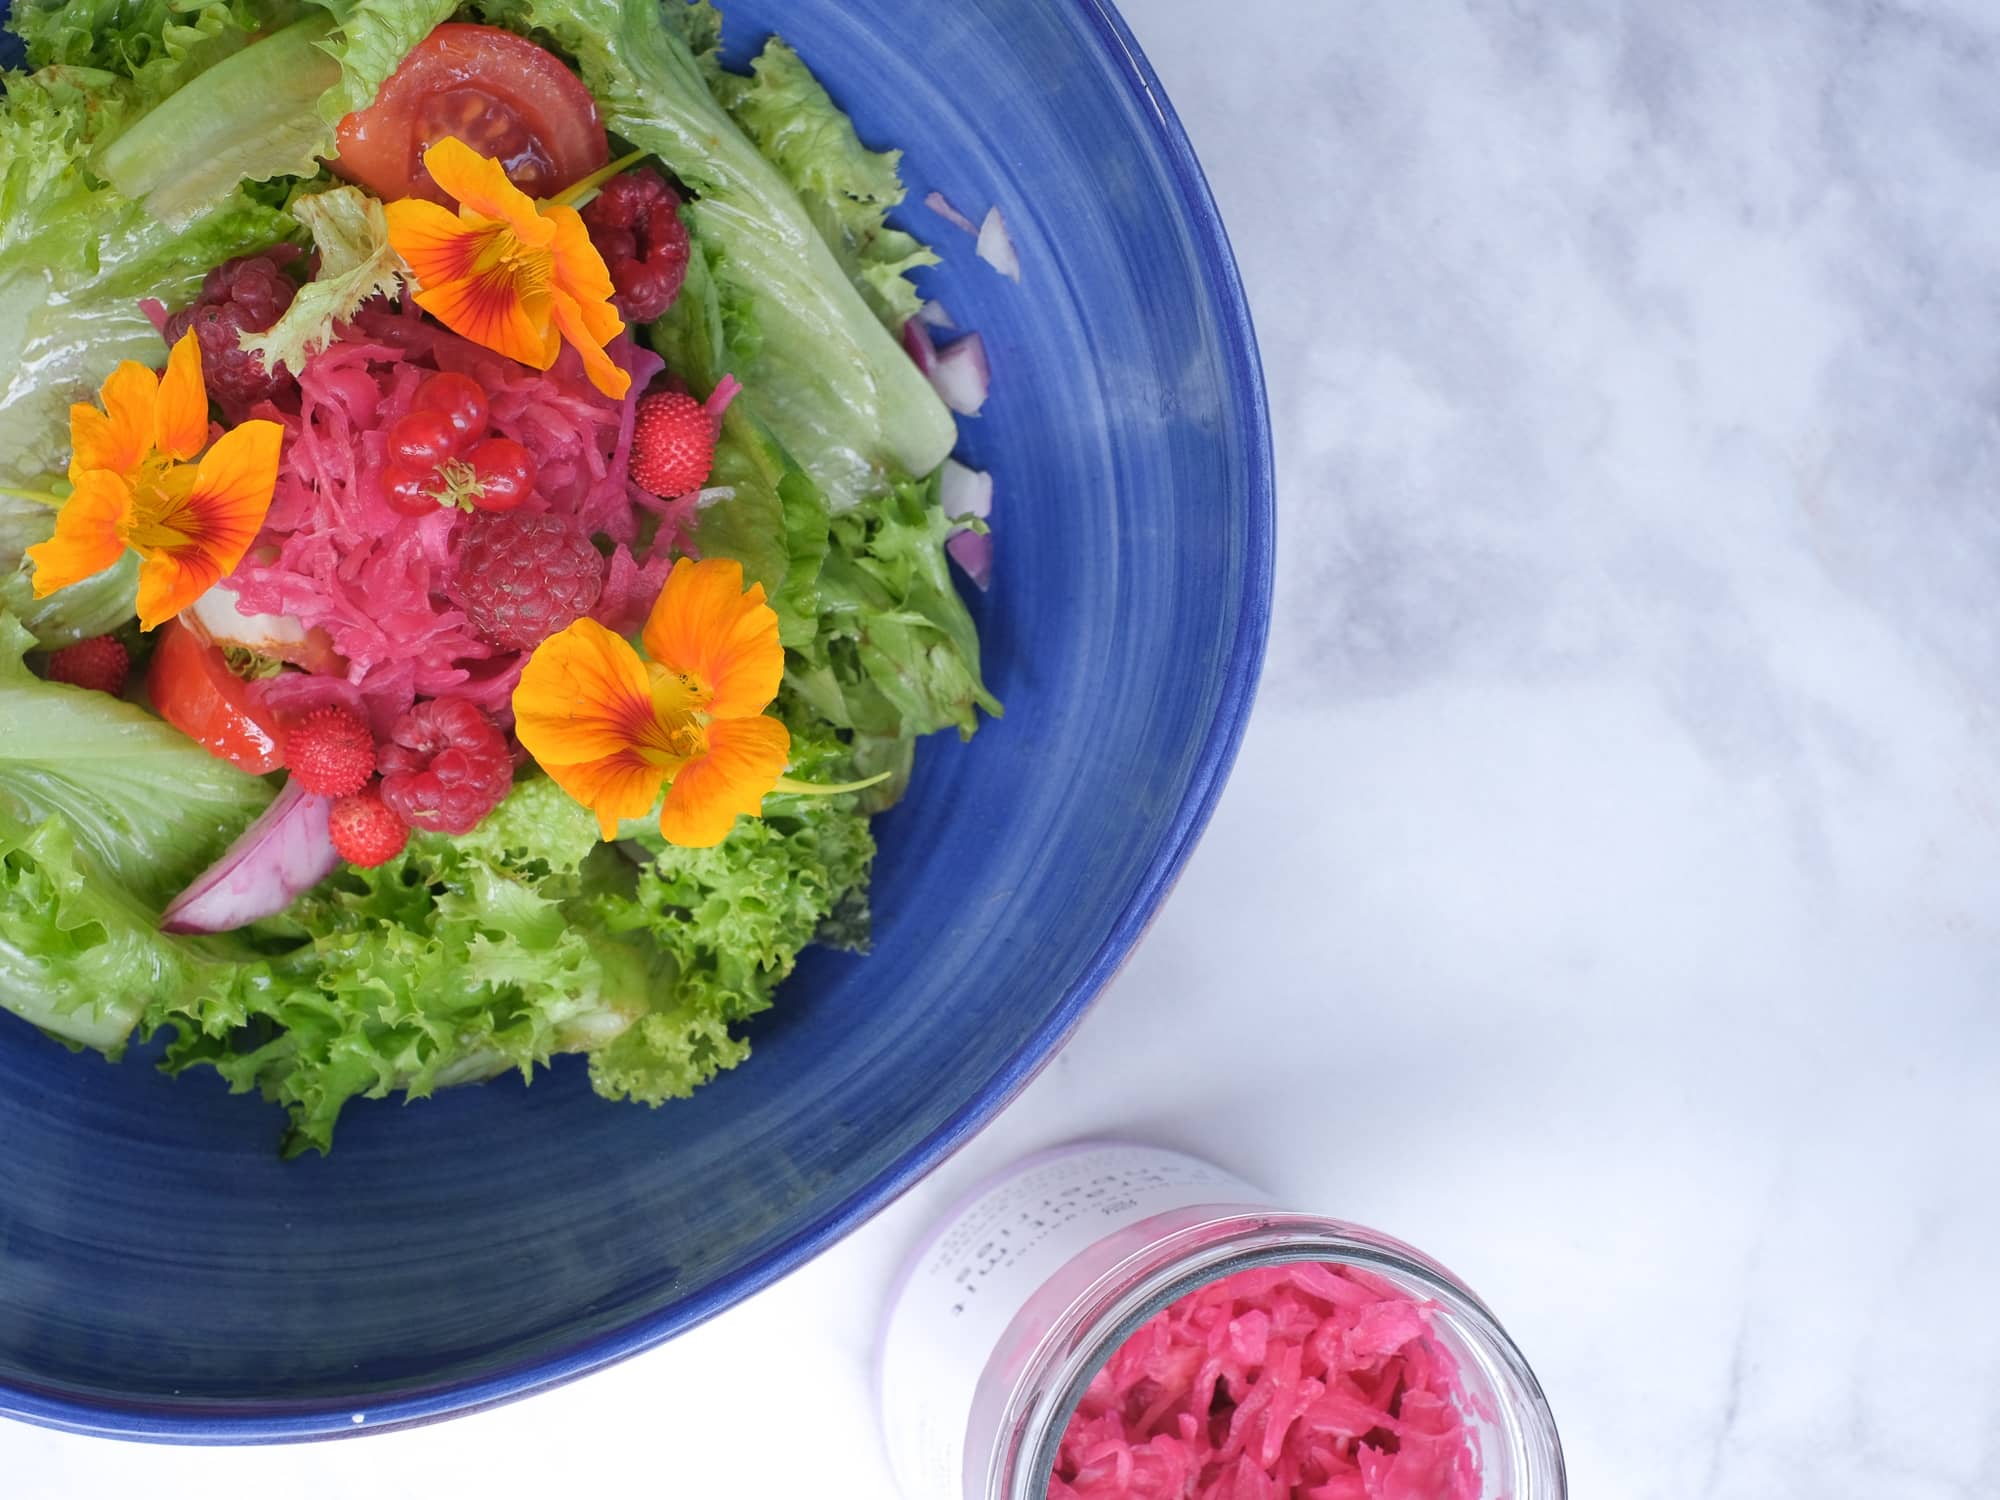 Grüner Salat mit sommerlich-frischem Aroma durch blueberry kraut